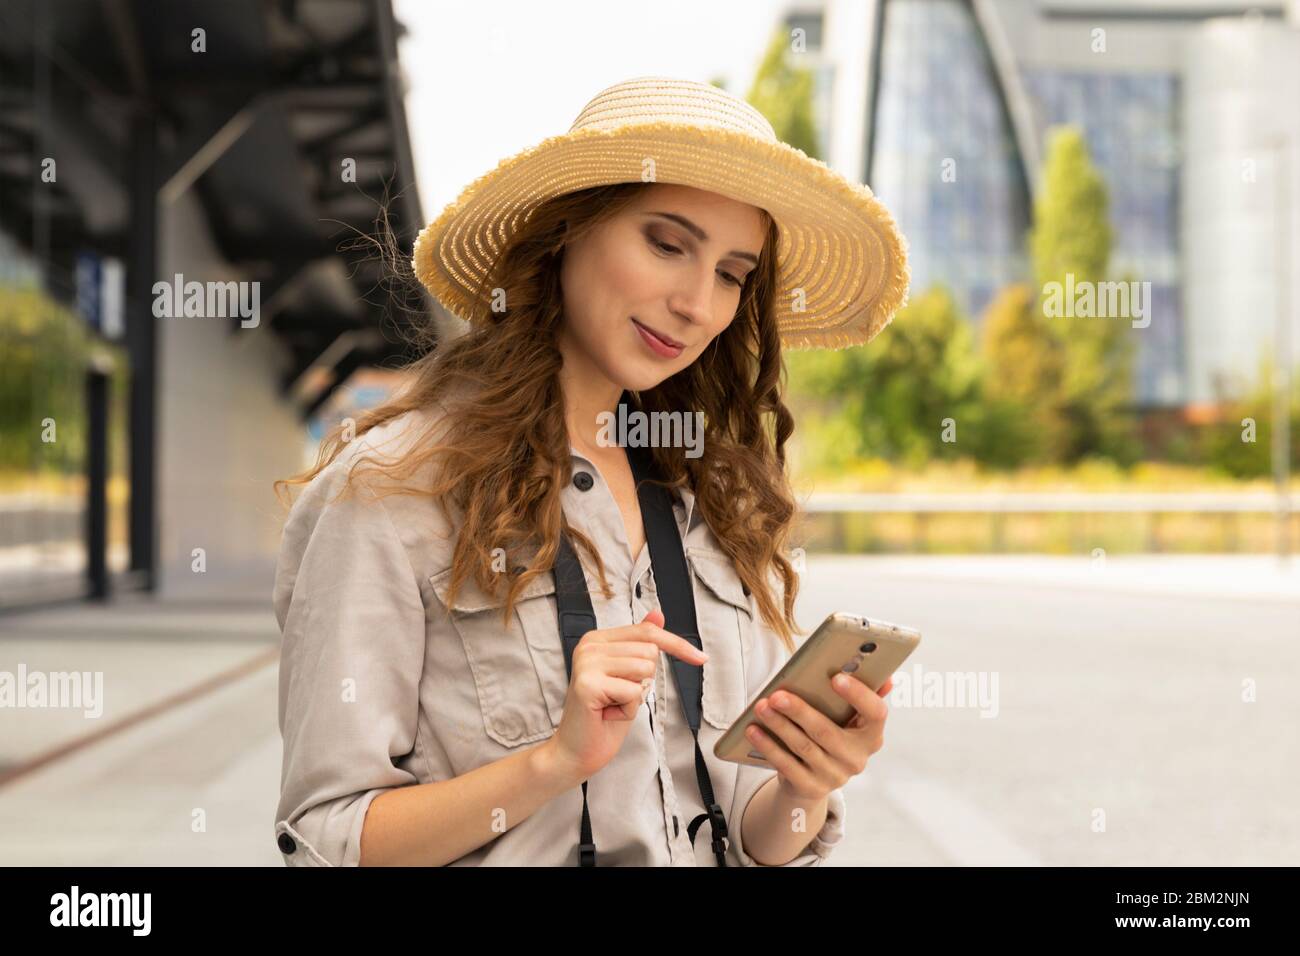 Immagine di giovane eccitato bella donna in posa turistica. Una donna con una valigia si trova alla stazione, comunica con qualcuno al telefono. Foto Stock